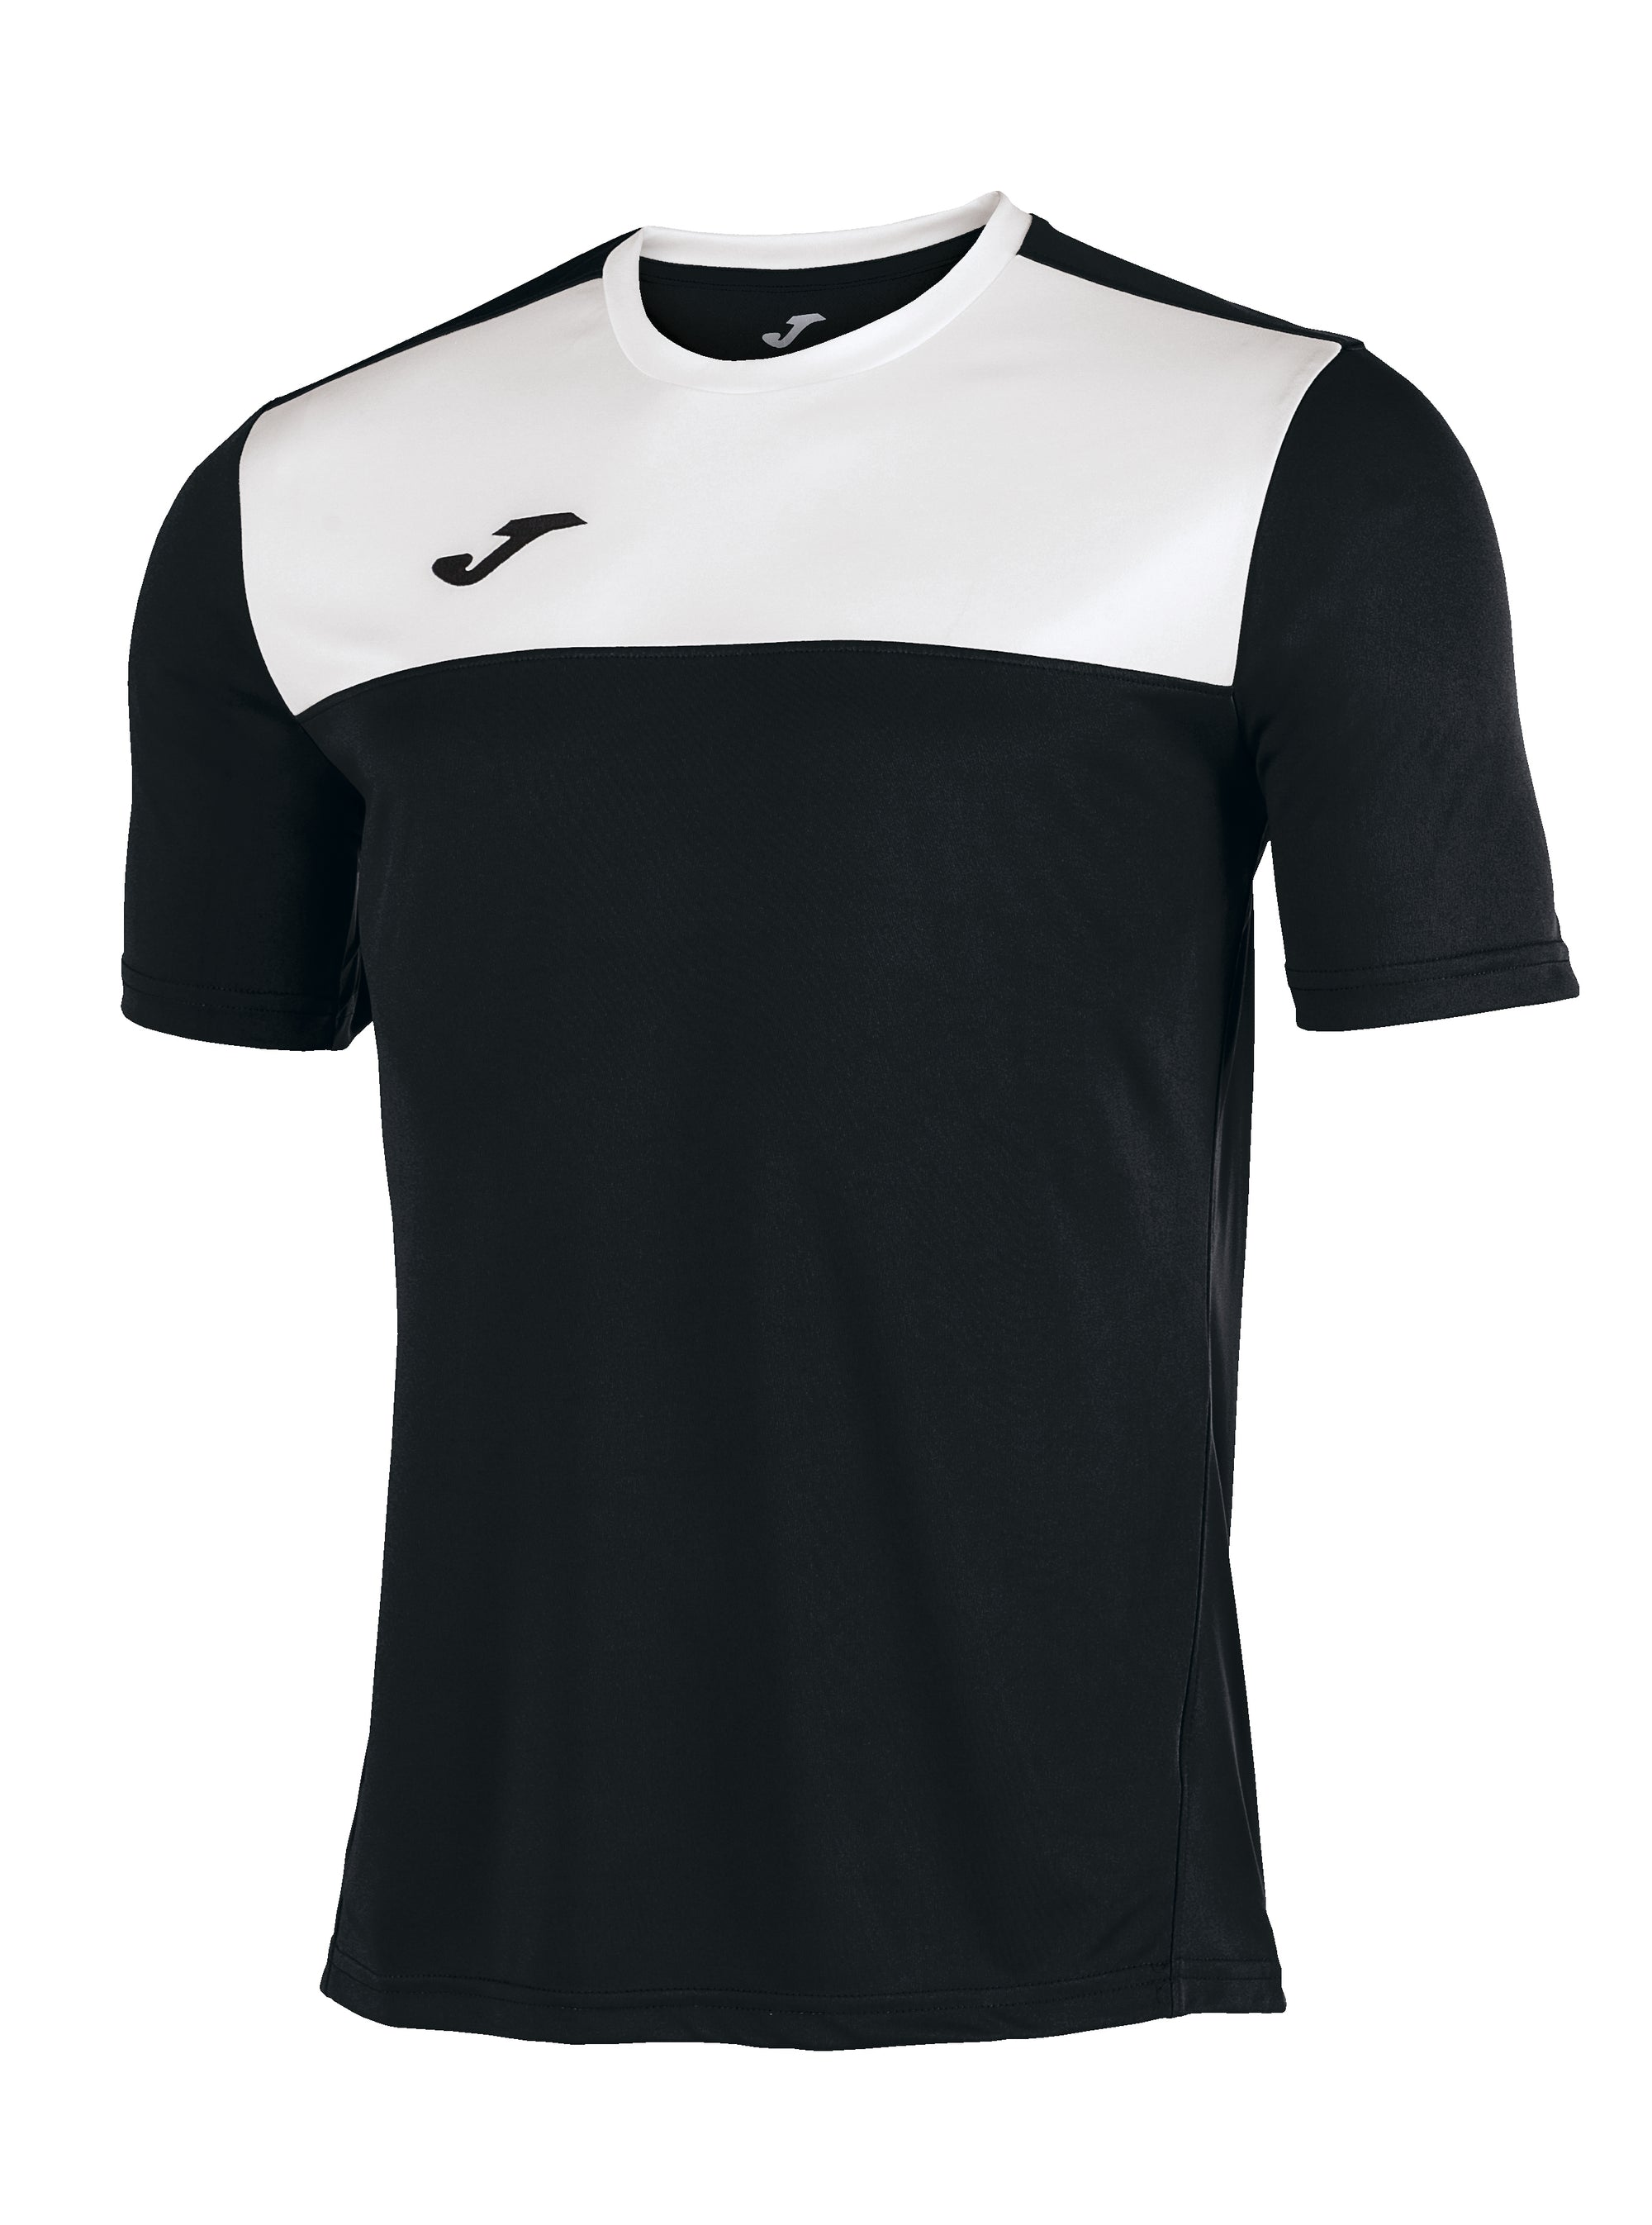 Joma Winner Short Sleeved T-Shirt - Black/White